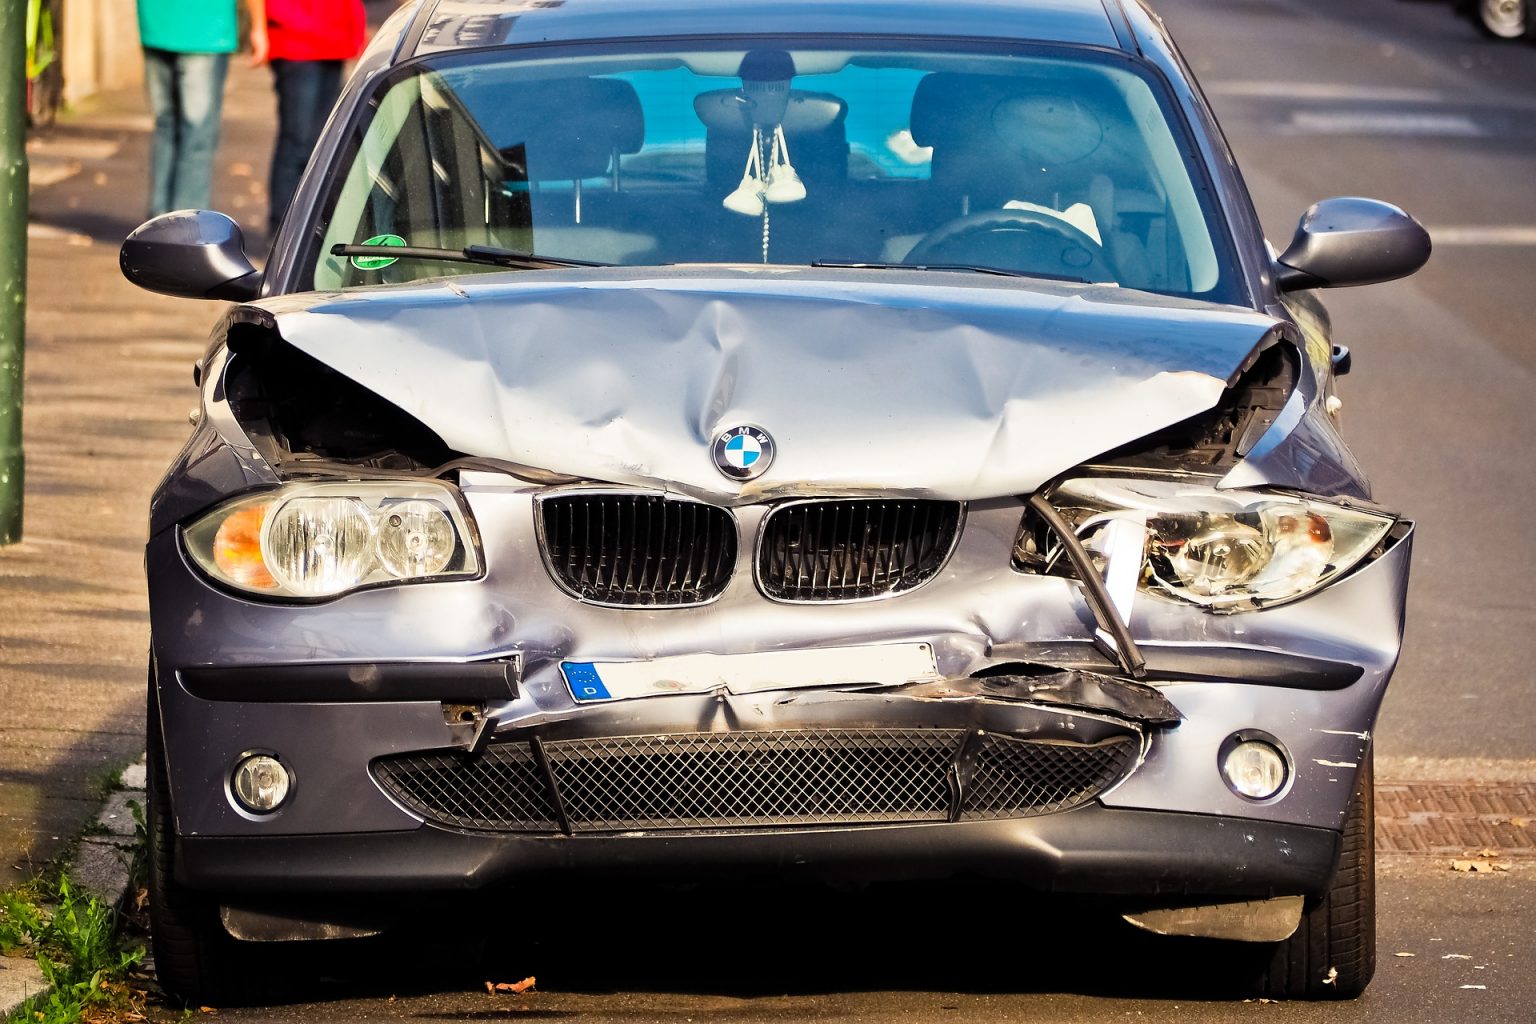 Mora li oštećeni, da bi dobio naknadu štete, popraviti oštećeno vozilo?